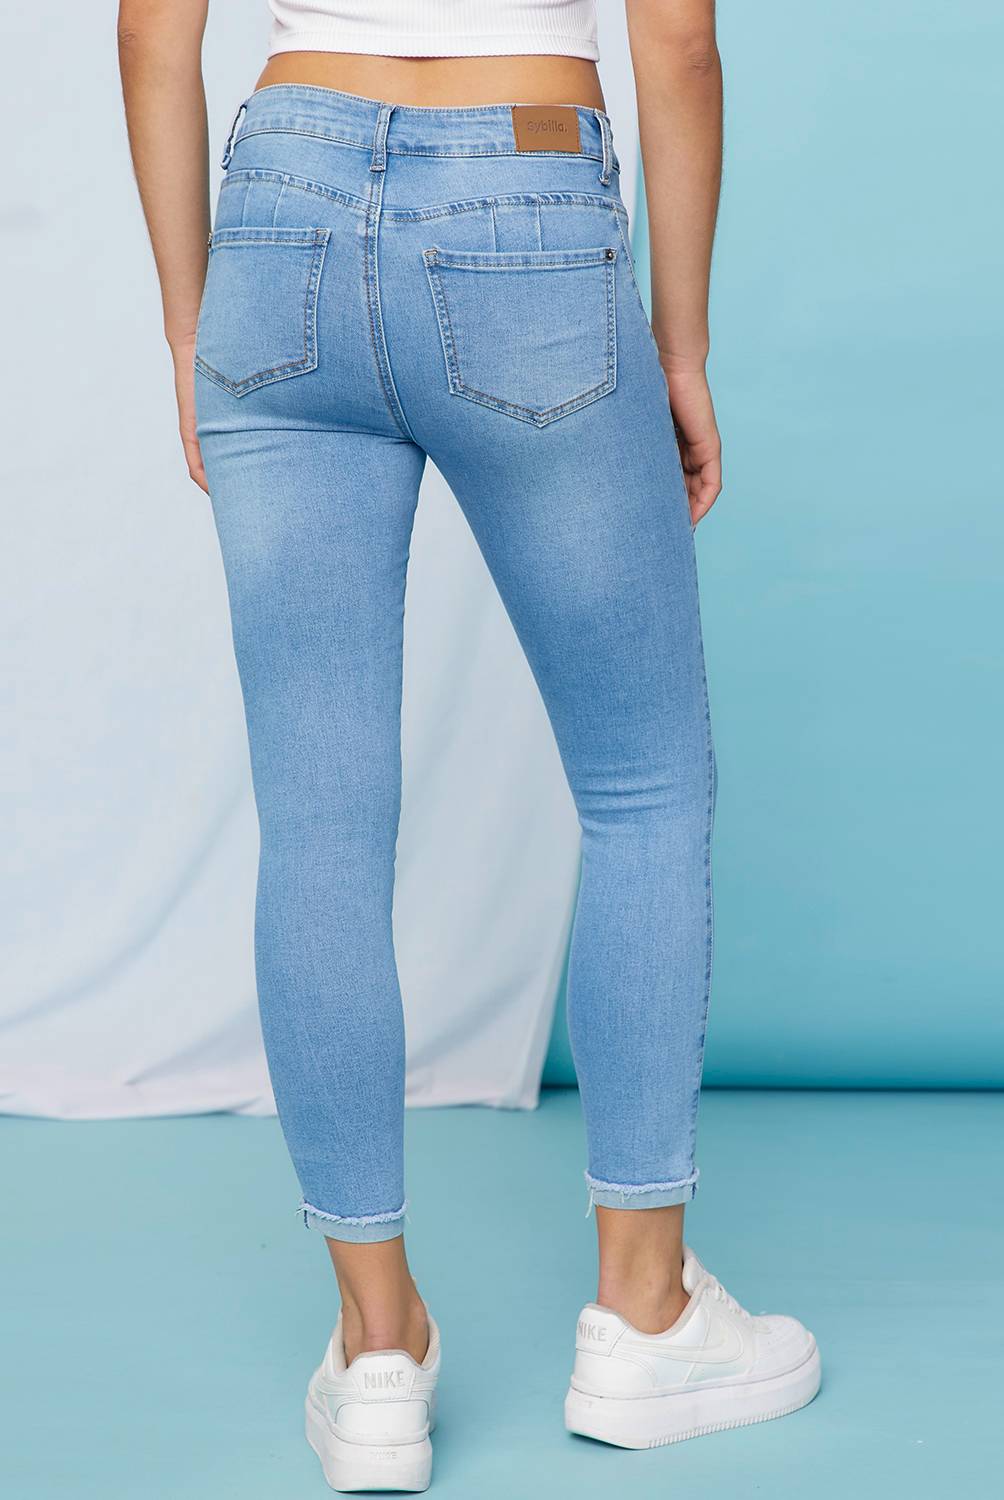 SYBILLA Jeans Skinny Push Up Tiro Alto Denim Mujer Sybilla